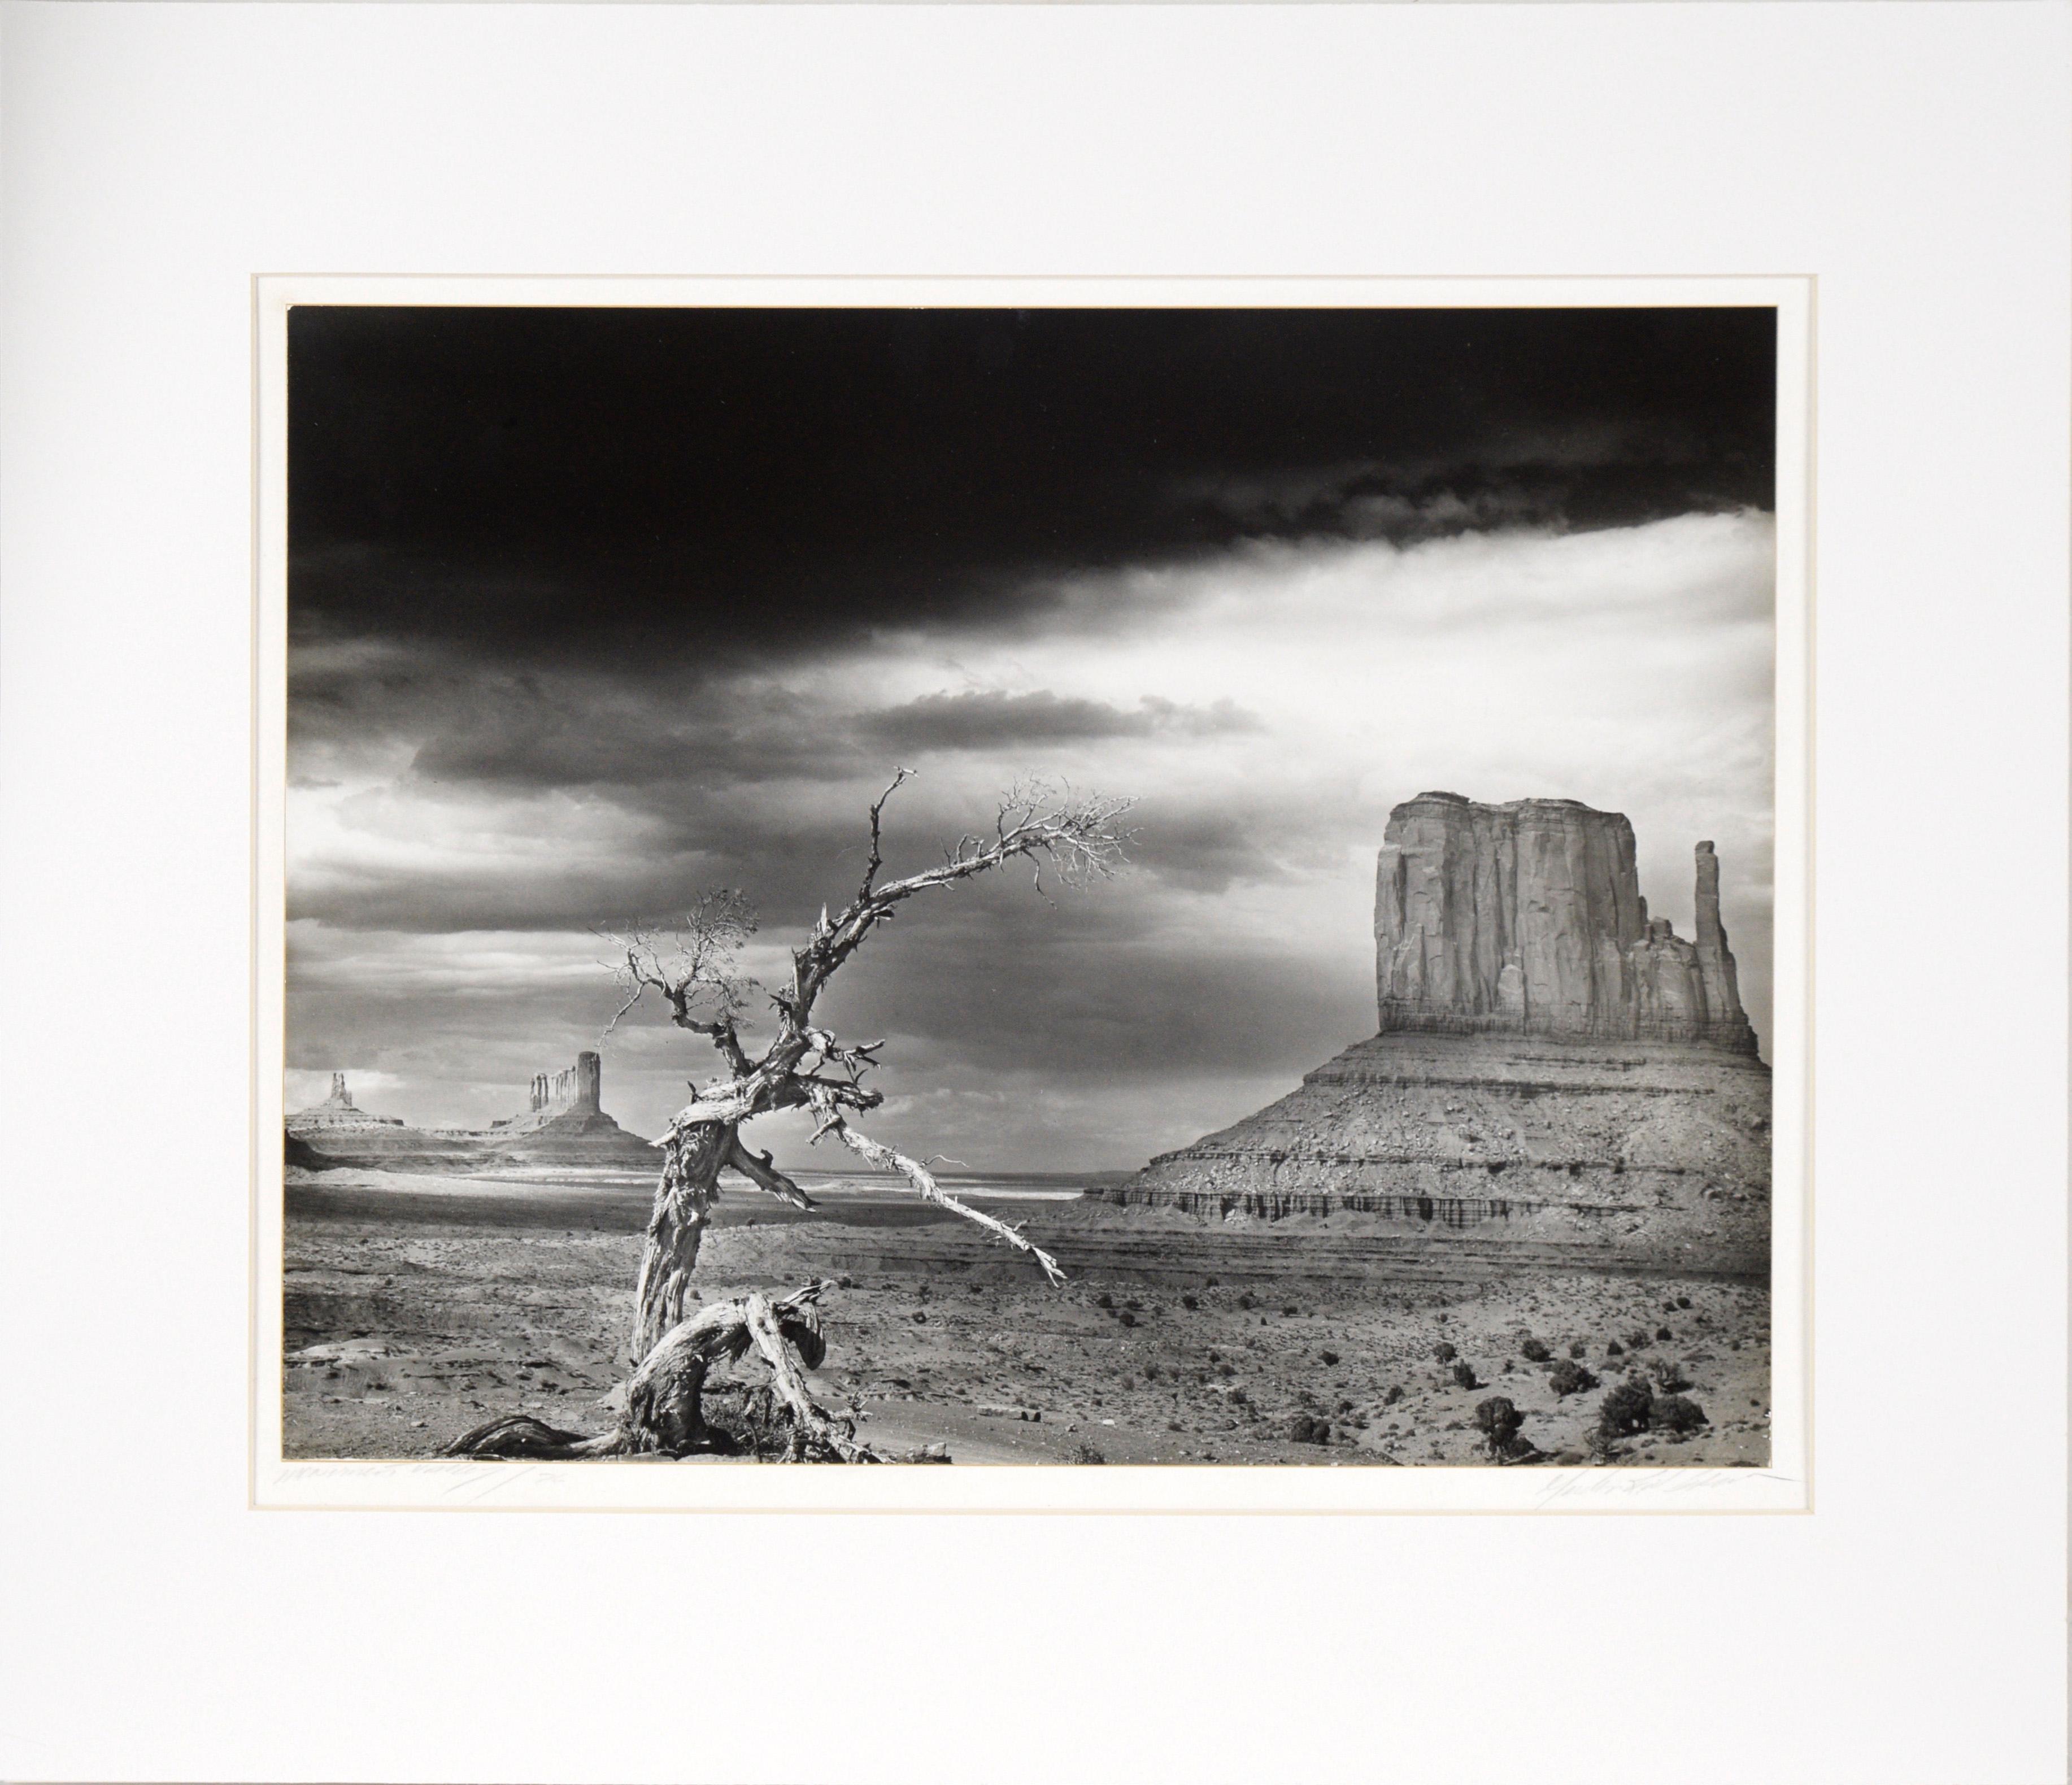 Black and White Photograph Unknown - "Monument Valley" Photographie en noir et blanc